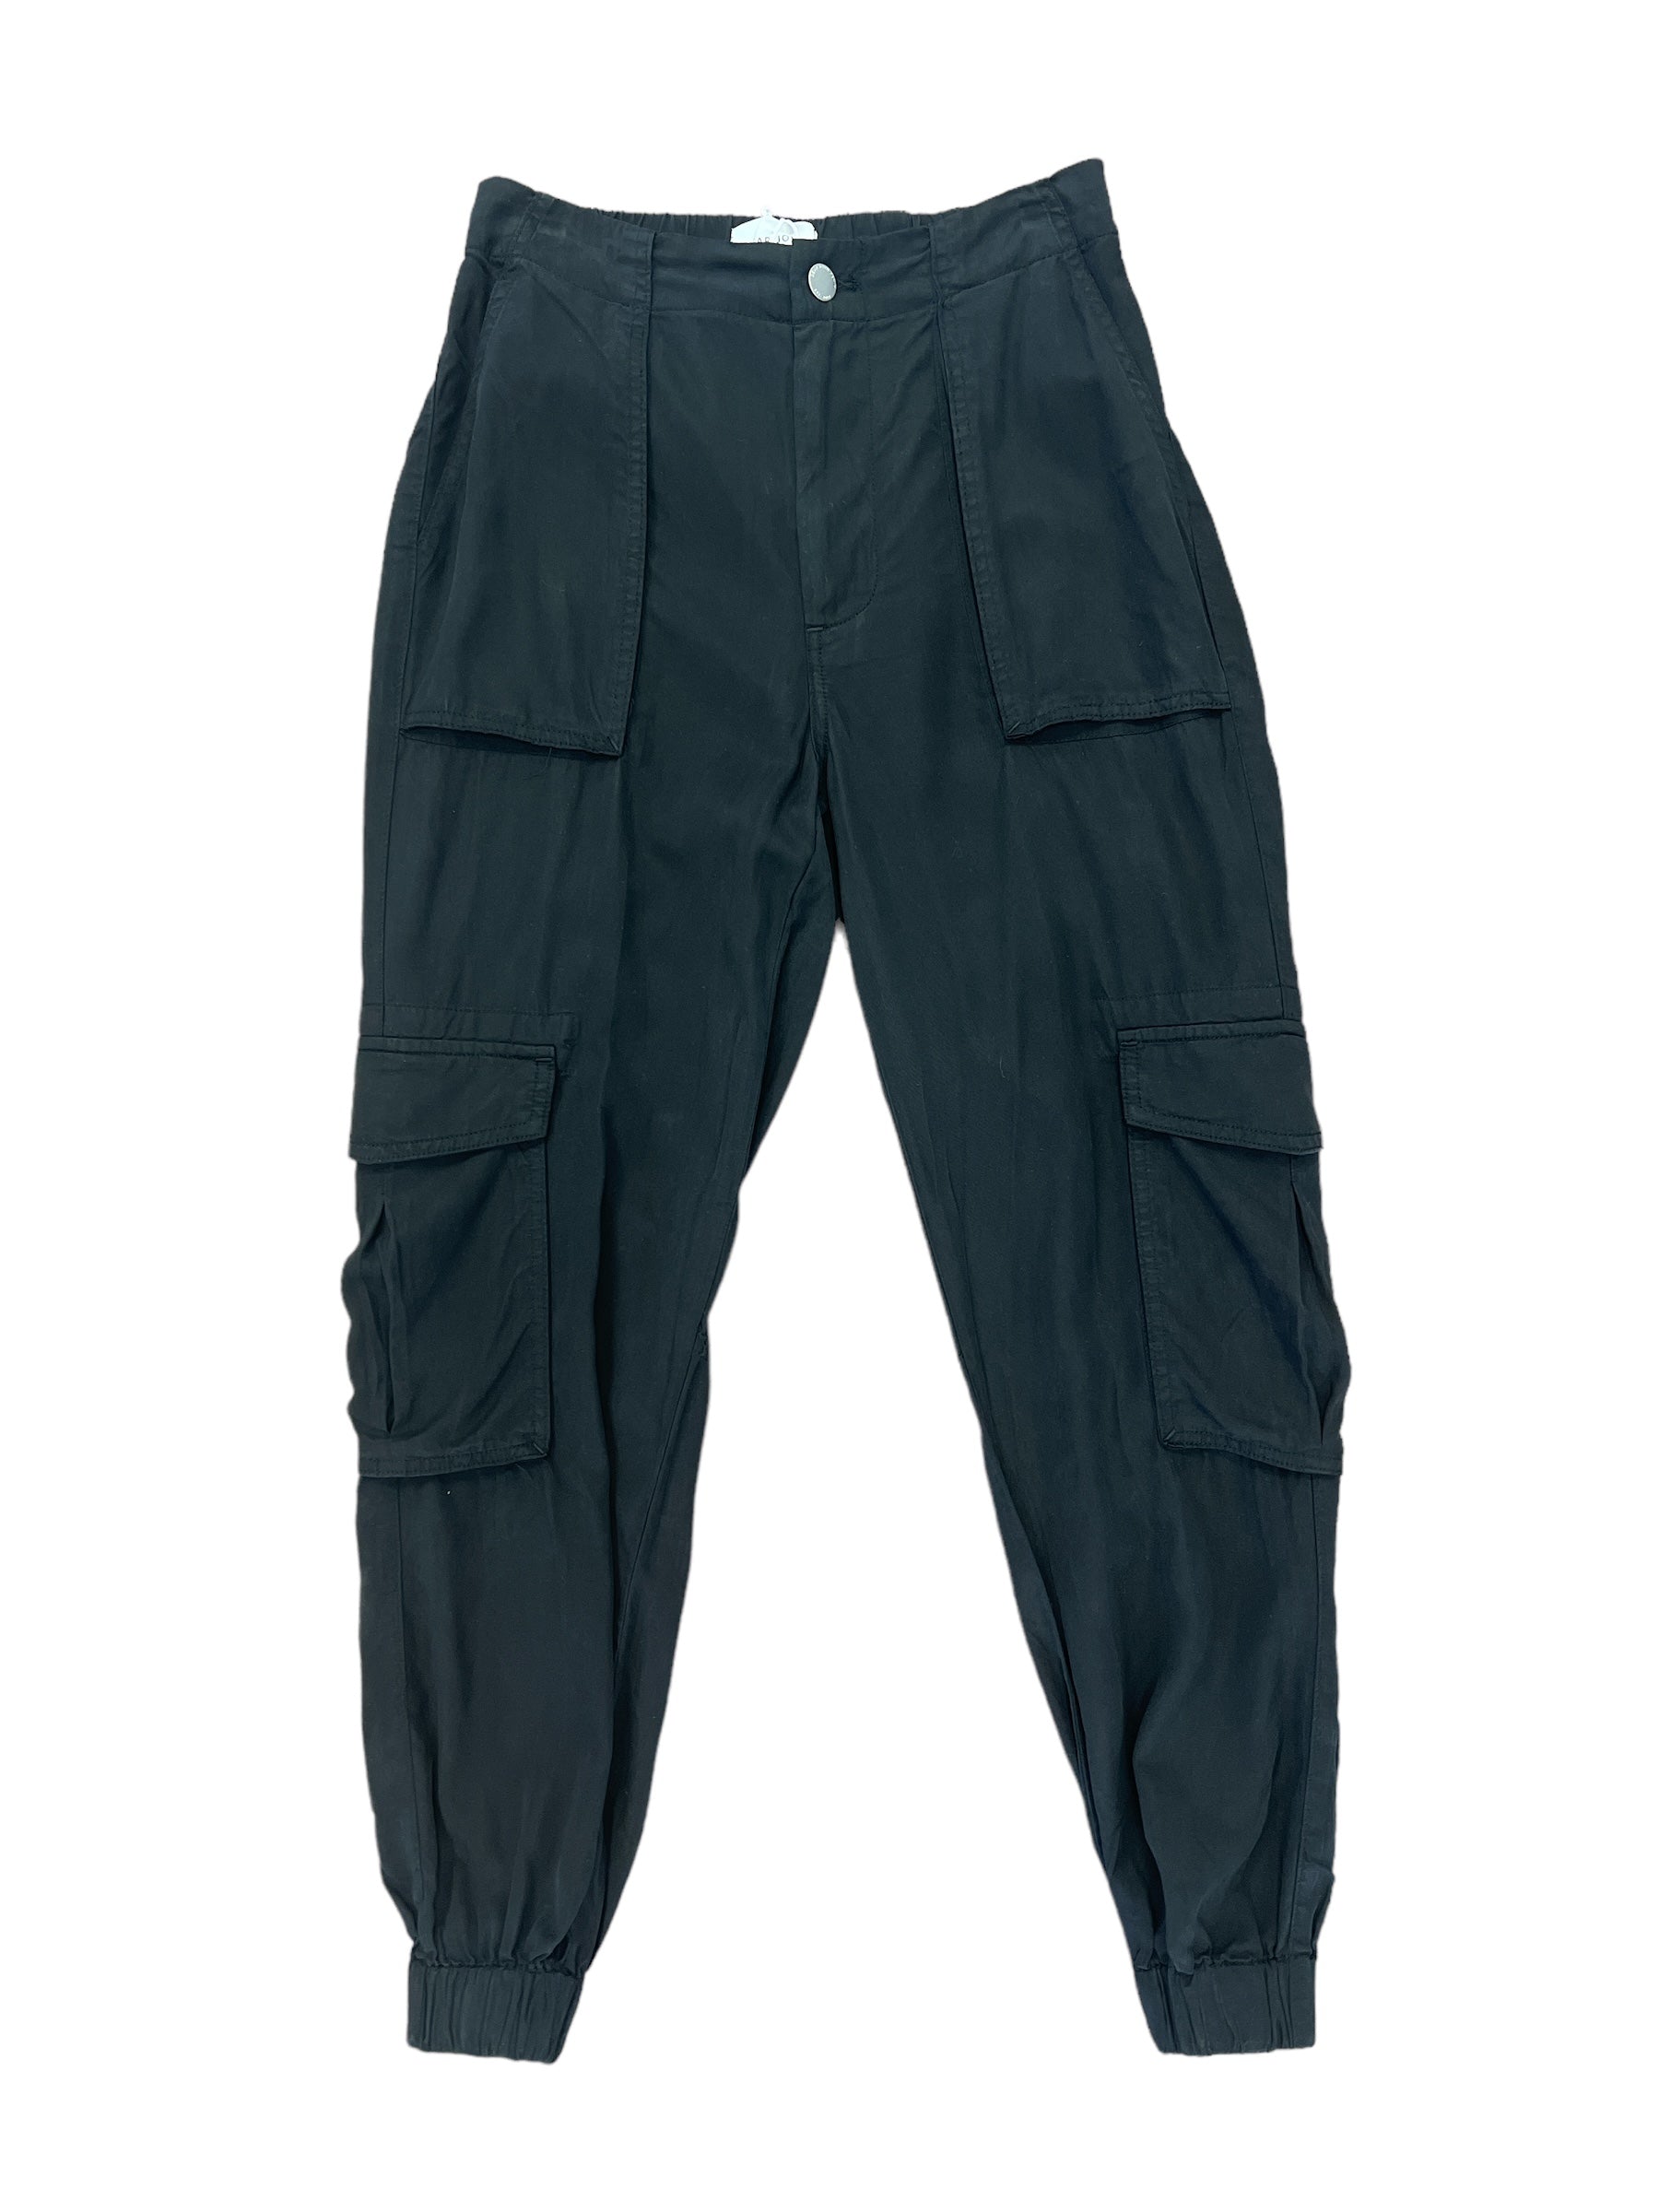 Sandy Trouser Pant-230 Pants-Dear John-Simply Stylish Boutique | Women’s & Kid’s Fashion | Paducah, KY